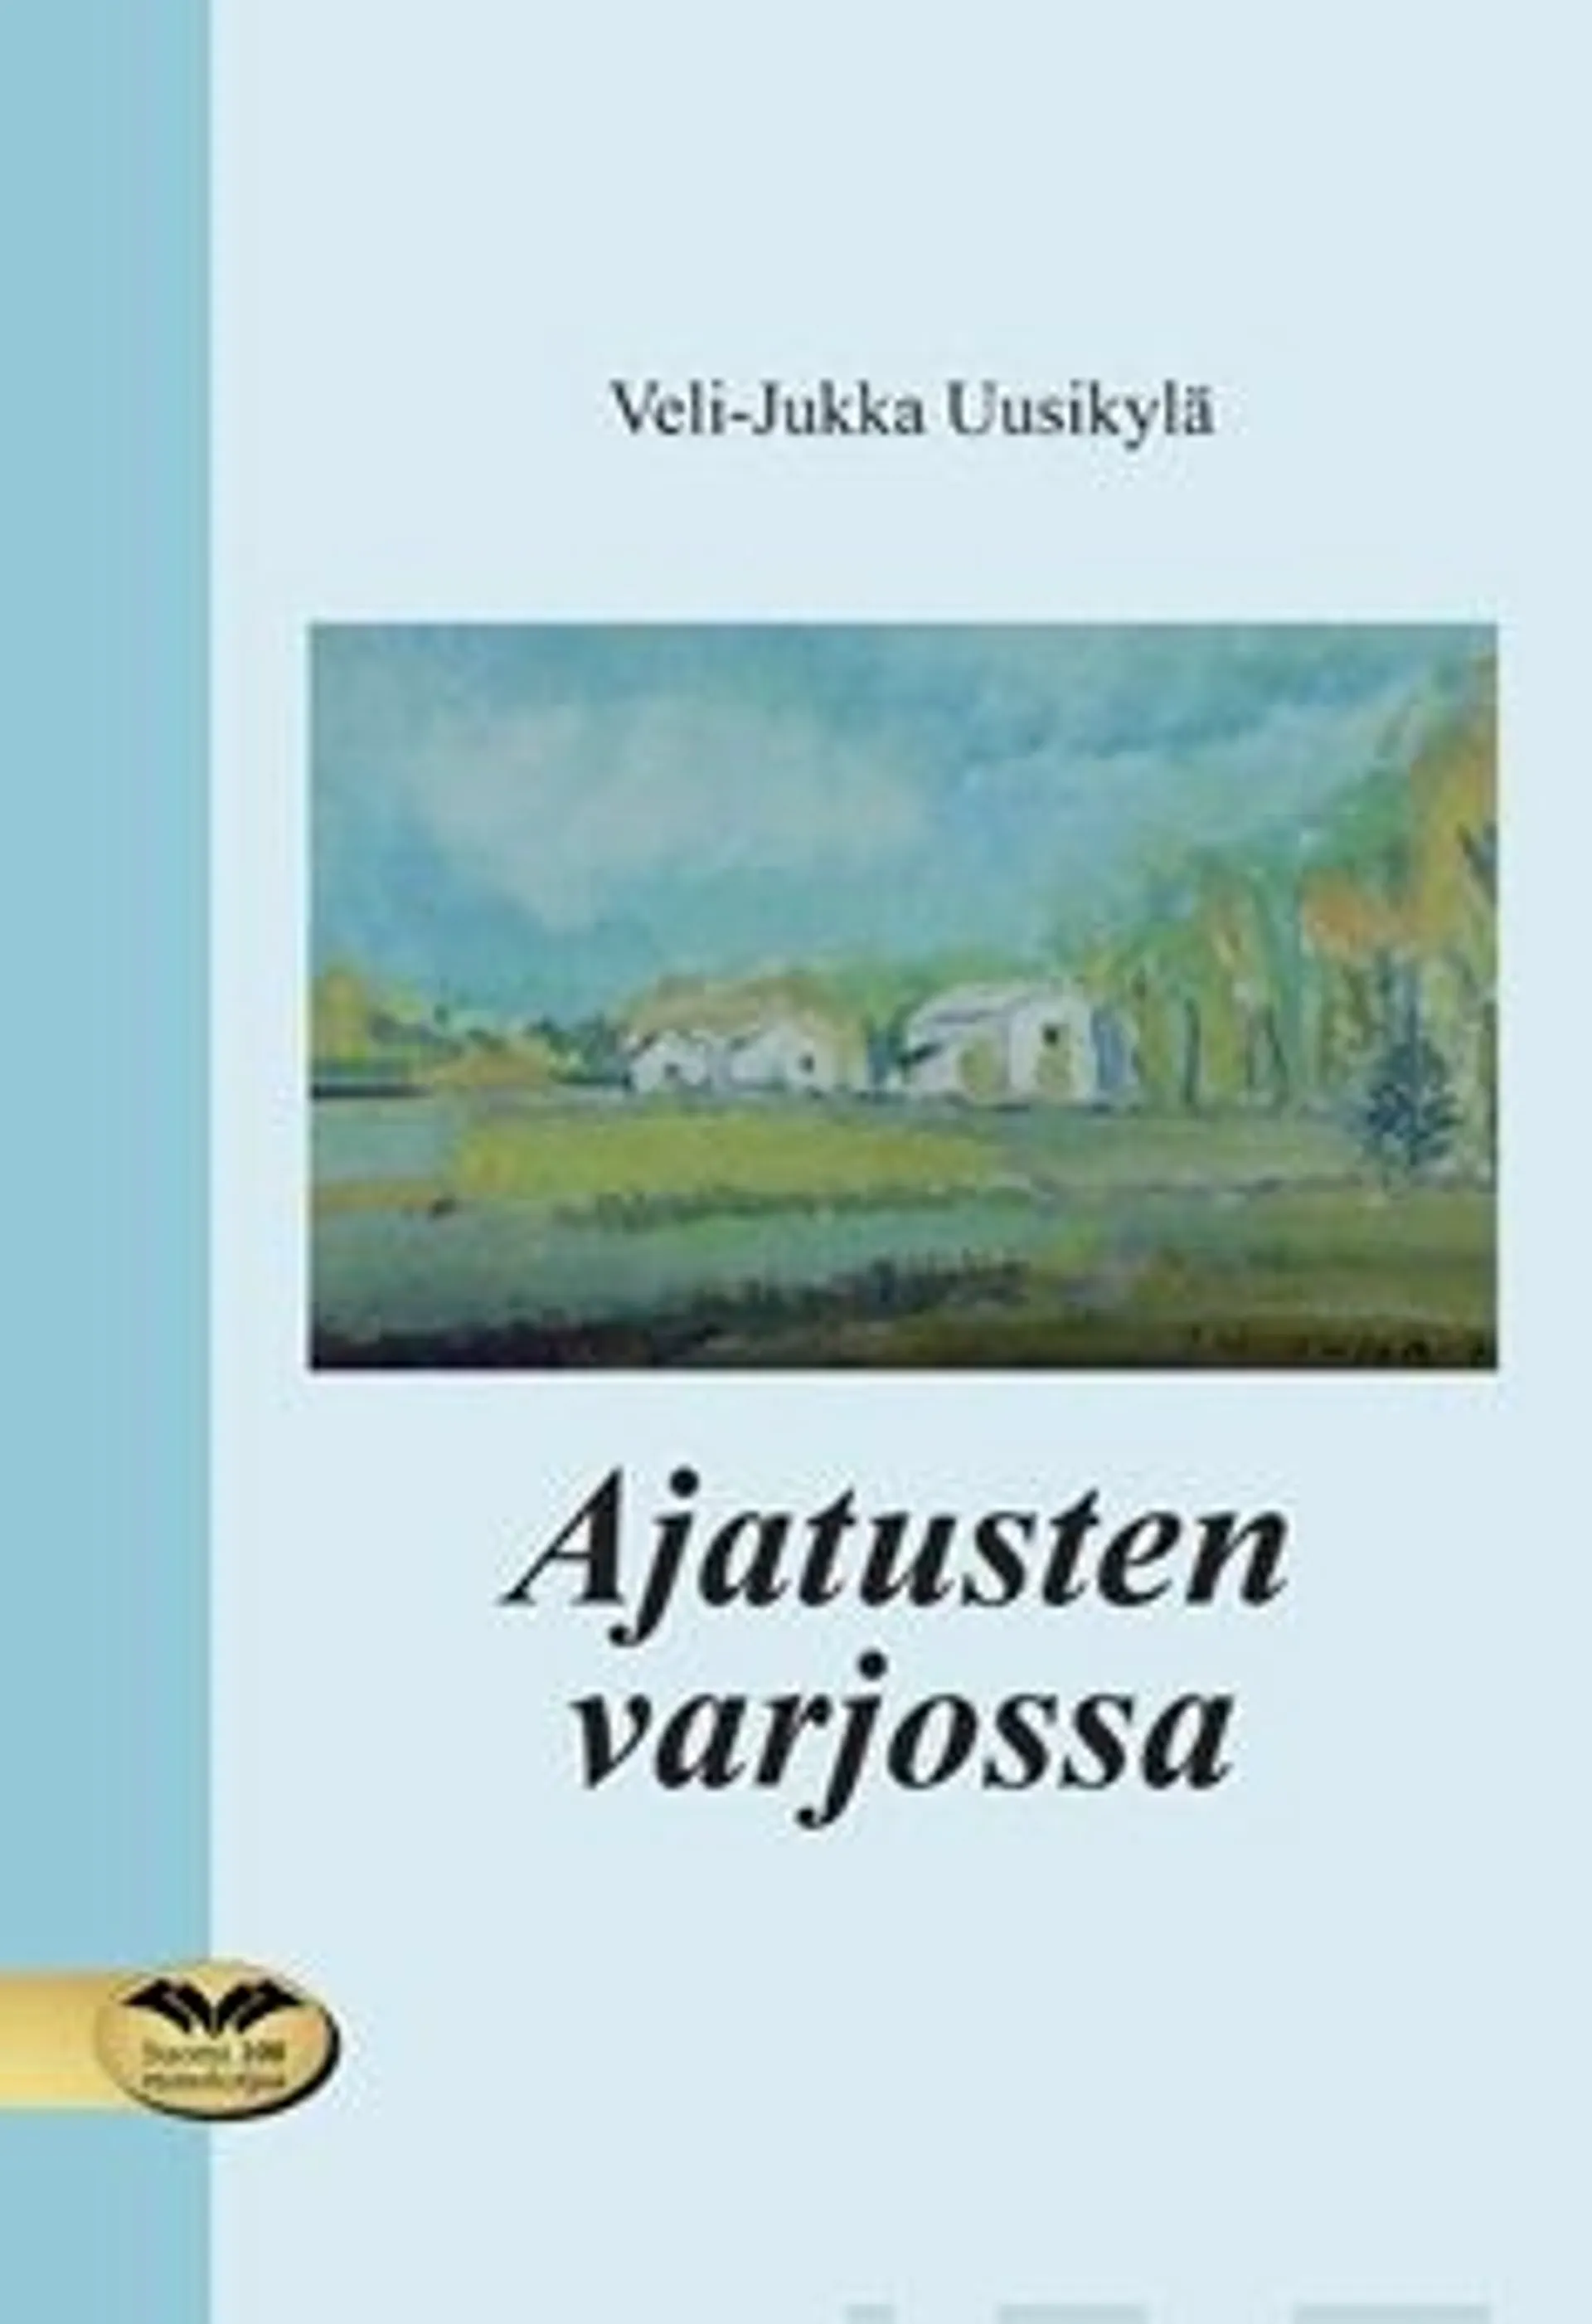 Uusikylä Veli-Jukka, Ajatusten varjossa